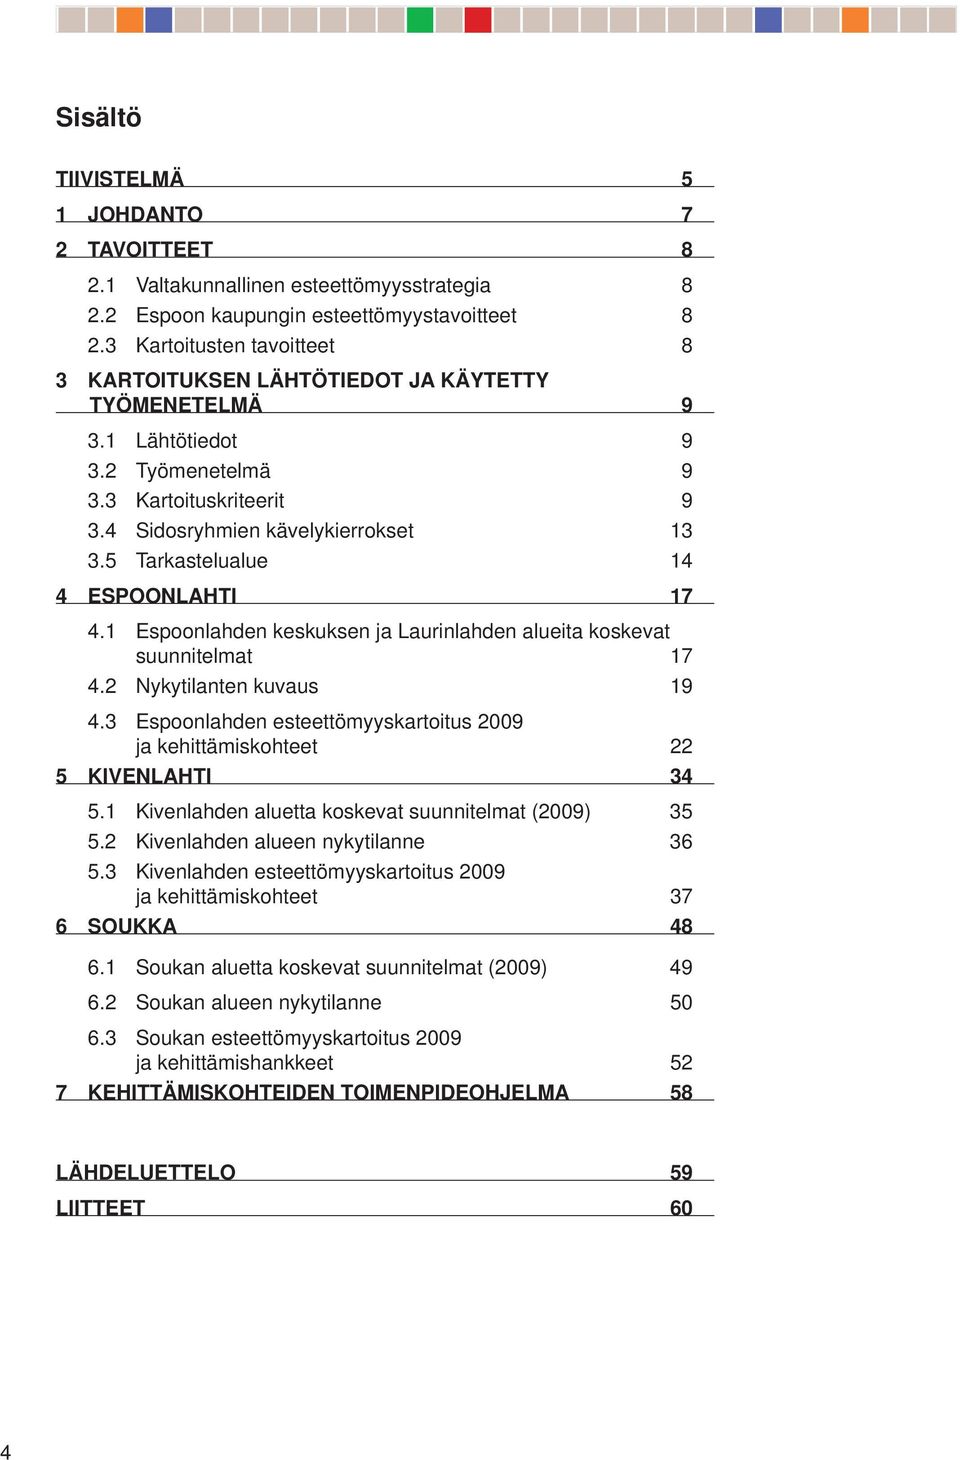 Espoonlahden keskuksen ja Laurinlahden alueita koskevat suunnitelmat 7. Nykytilanten kuvaus 9. Espoonlahden esteettömyyskartoitus 009 ja kehittämiskohteet KENLAHTI.